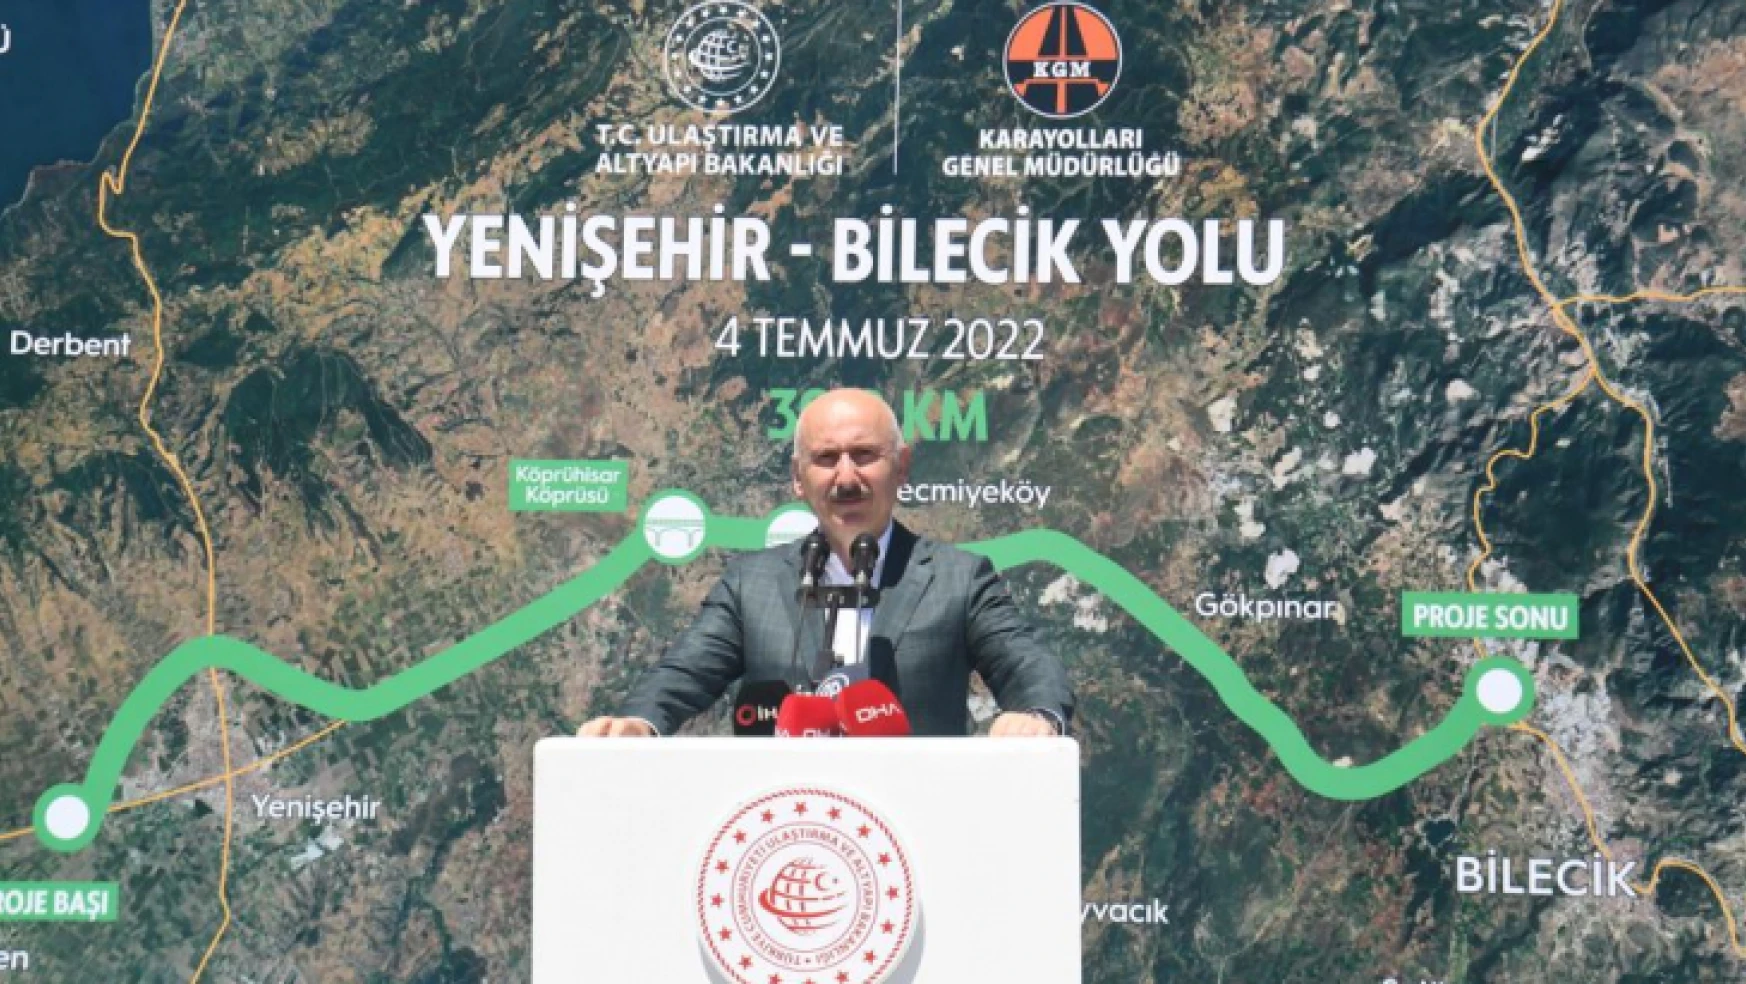 Bilecik-Yenişehir Yolu'nun Tamamı 2022 sonuna kadar tamamlanacak